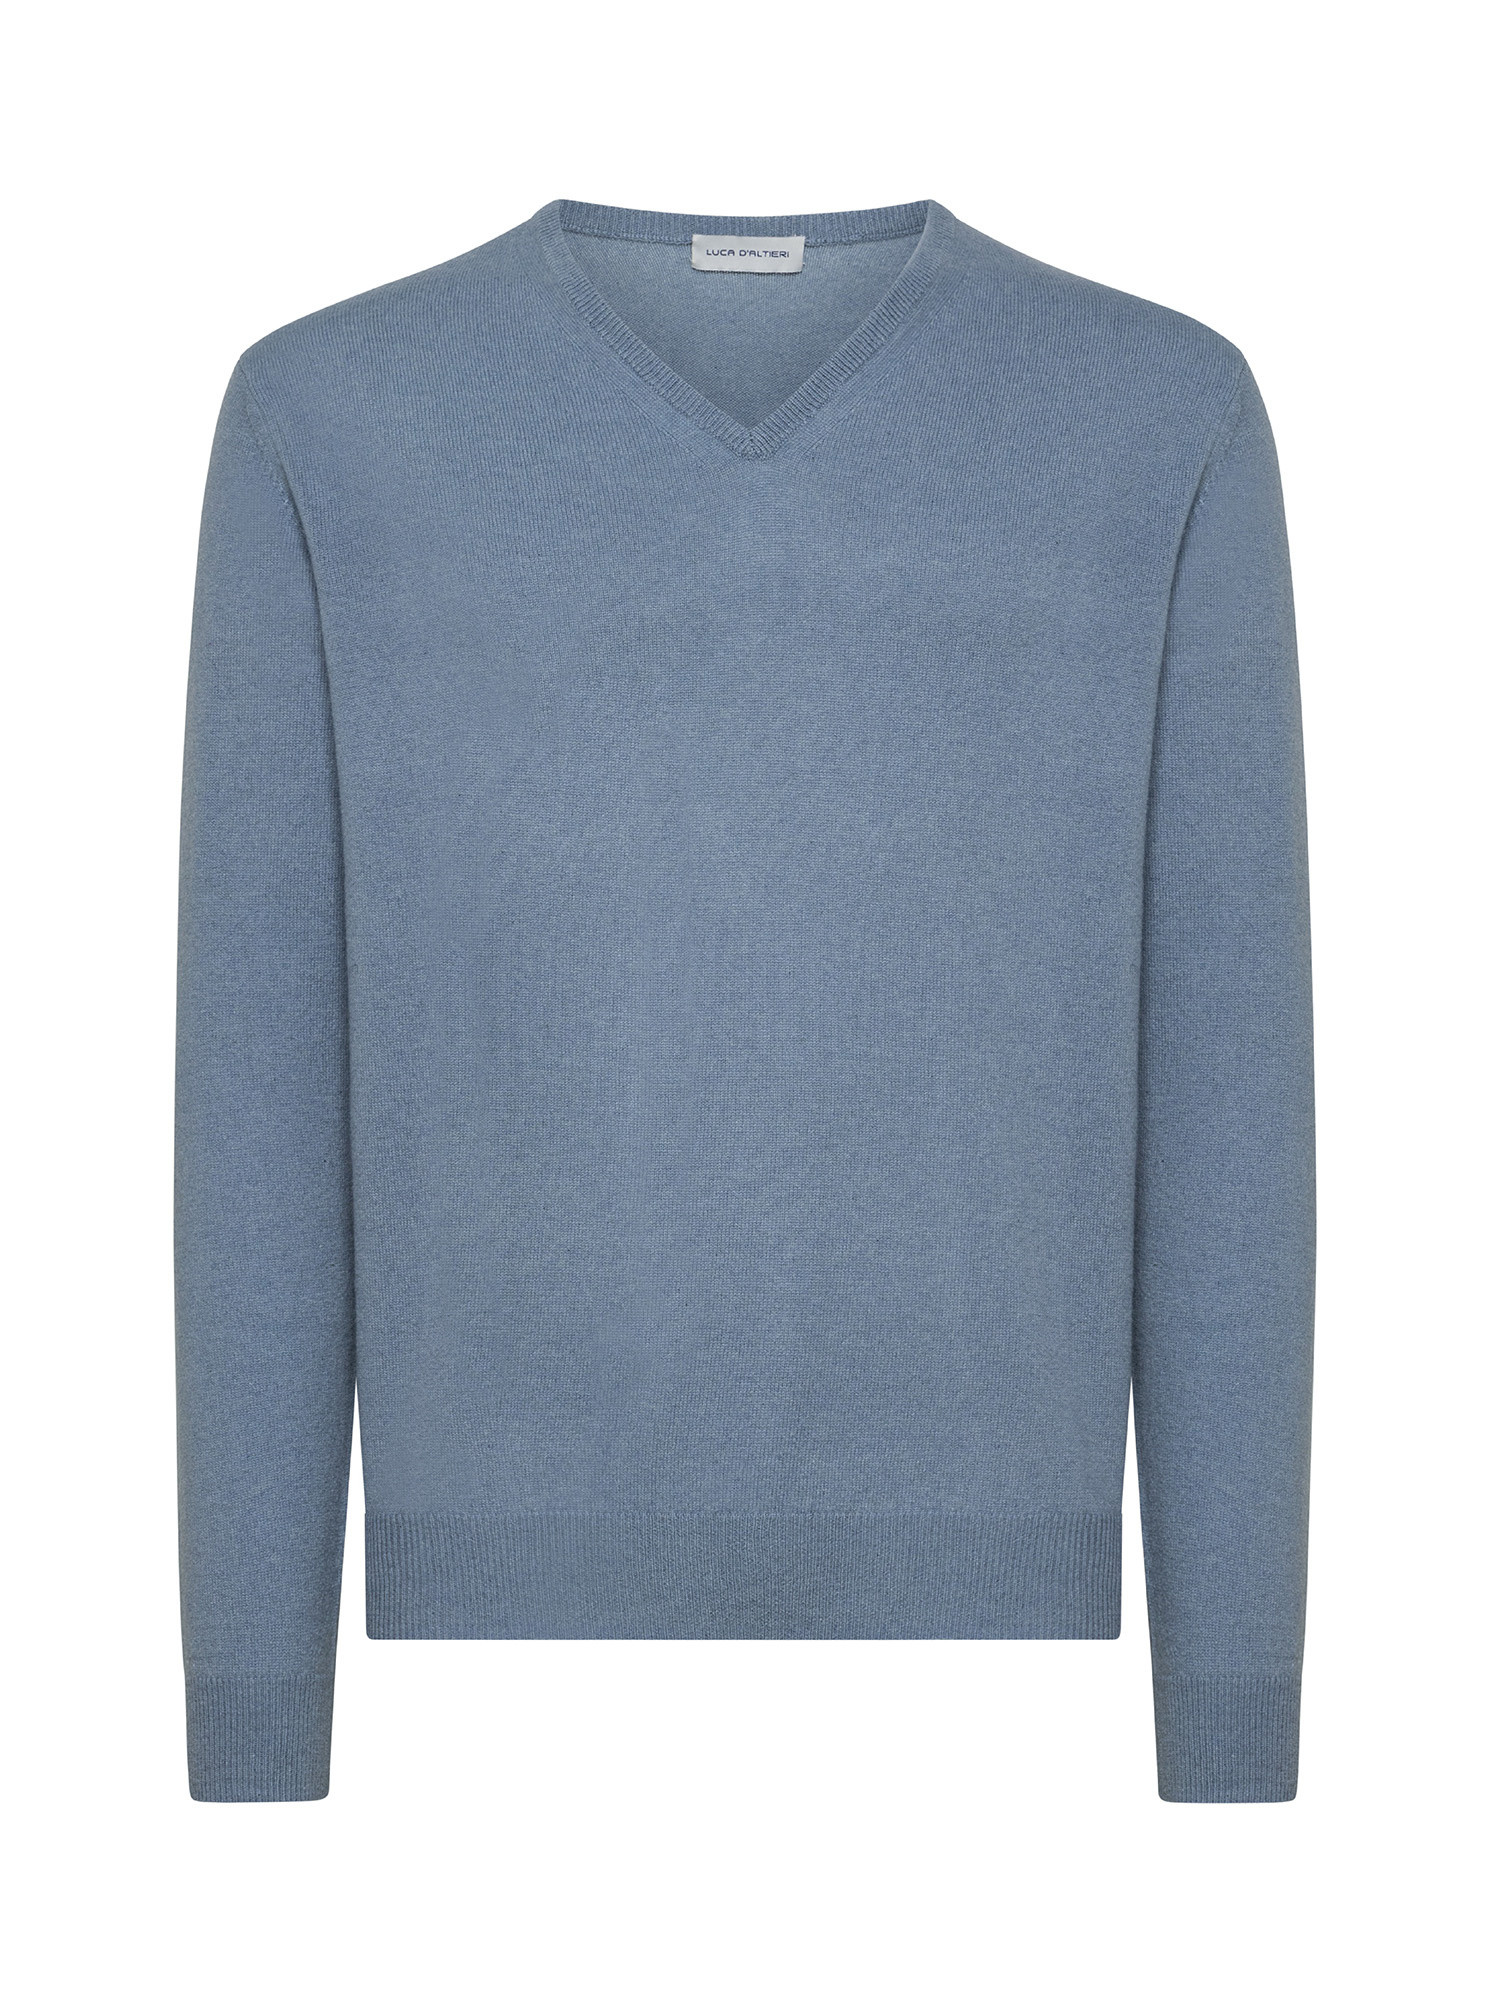 Пуловер с V-образным вырезом из чистого кашемира Luca D'Altieri, голубой пуловер с v образным вырезом из трикотажа с начесом s черный